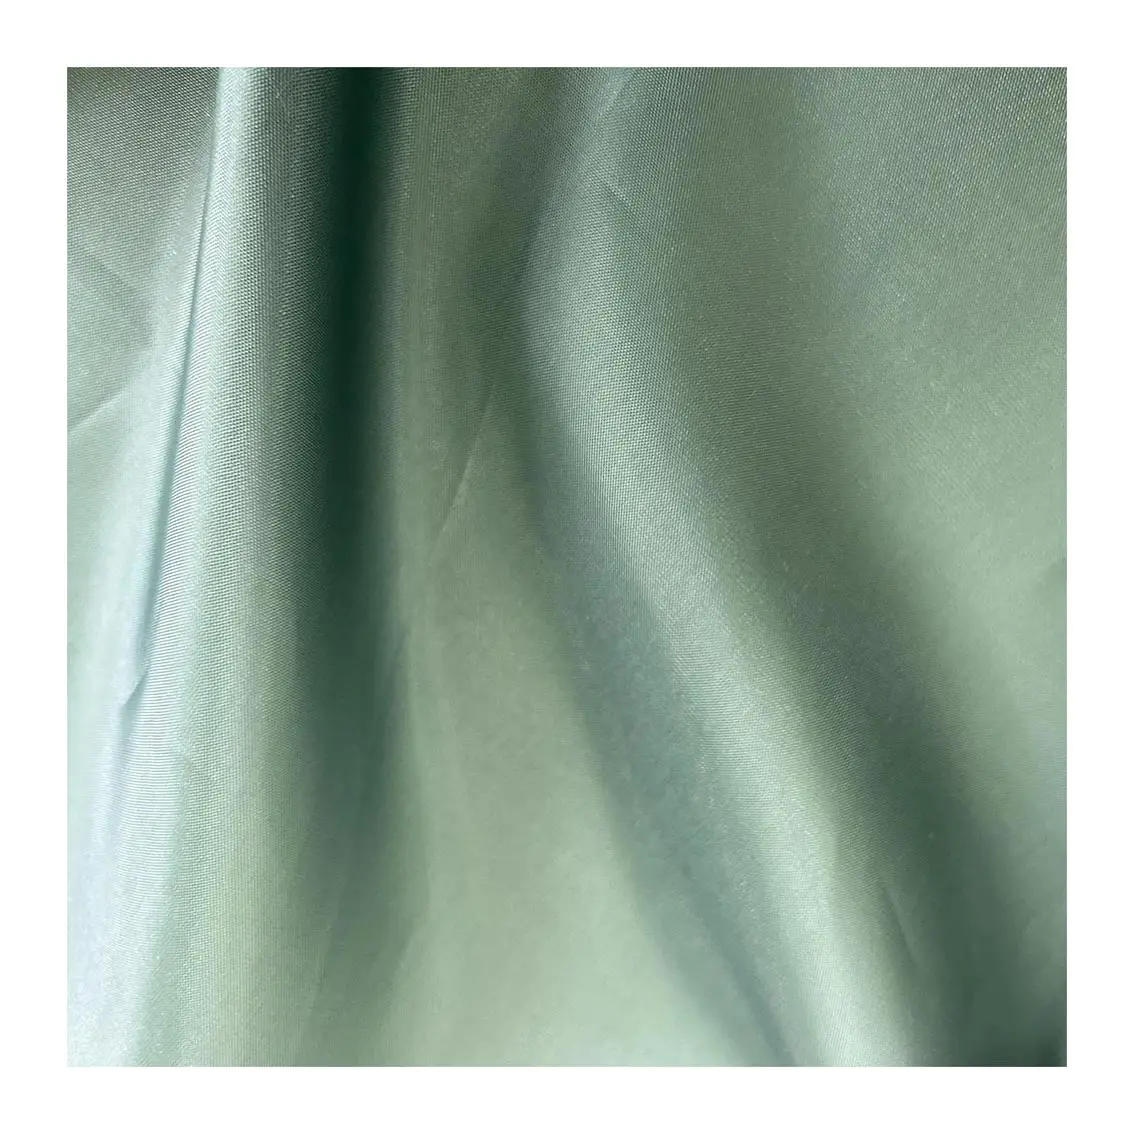 Rulo başına toptan ve iyi fiyat 75 Gram 100% Polyester tafta tela yeşil renk kumaş